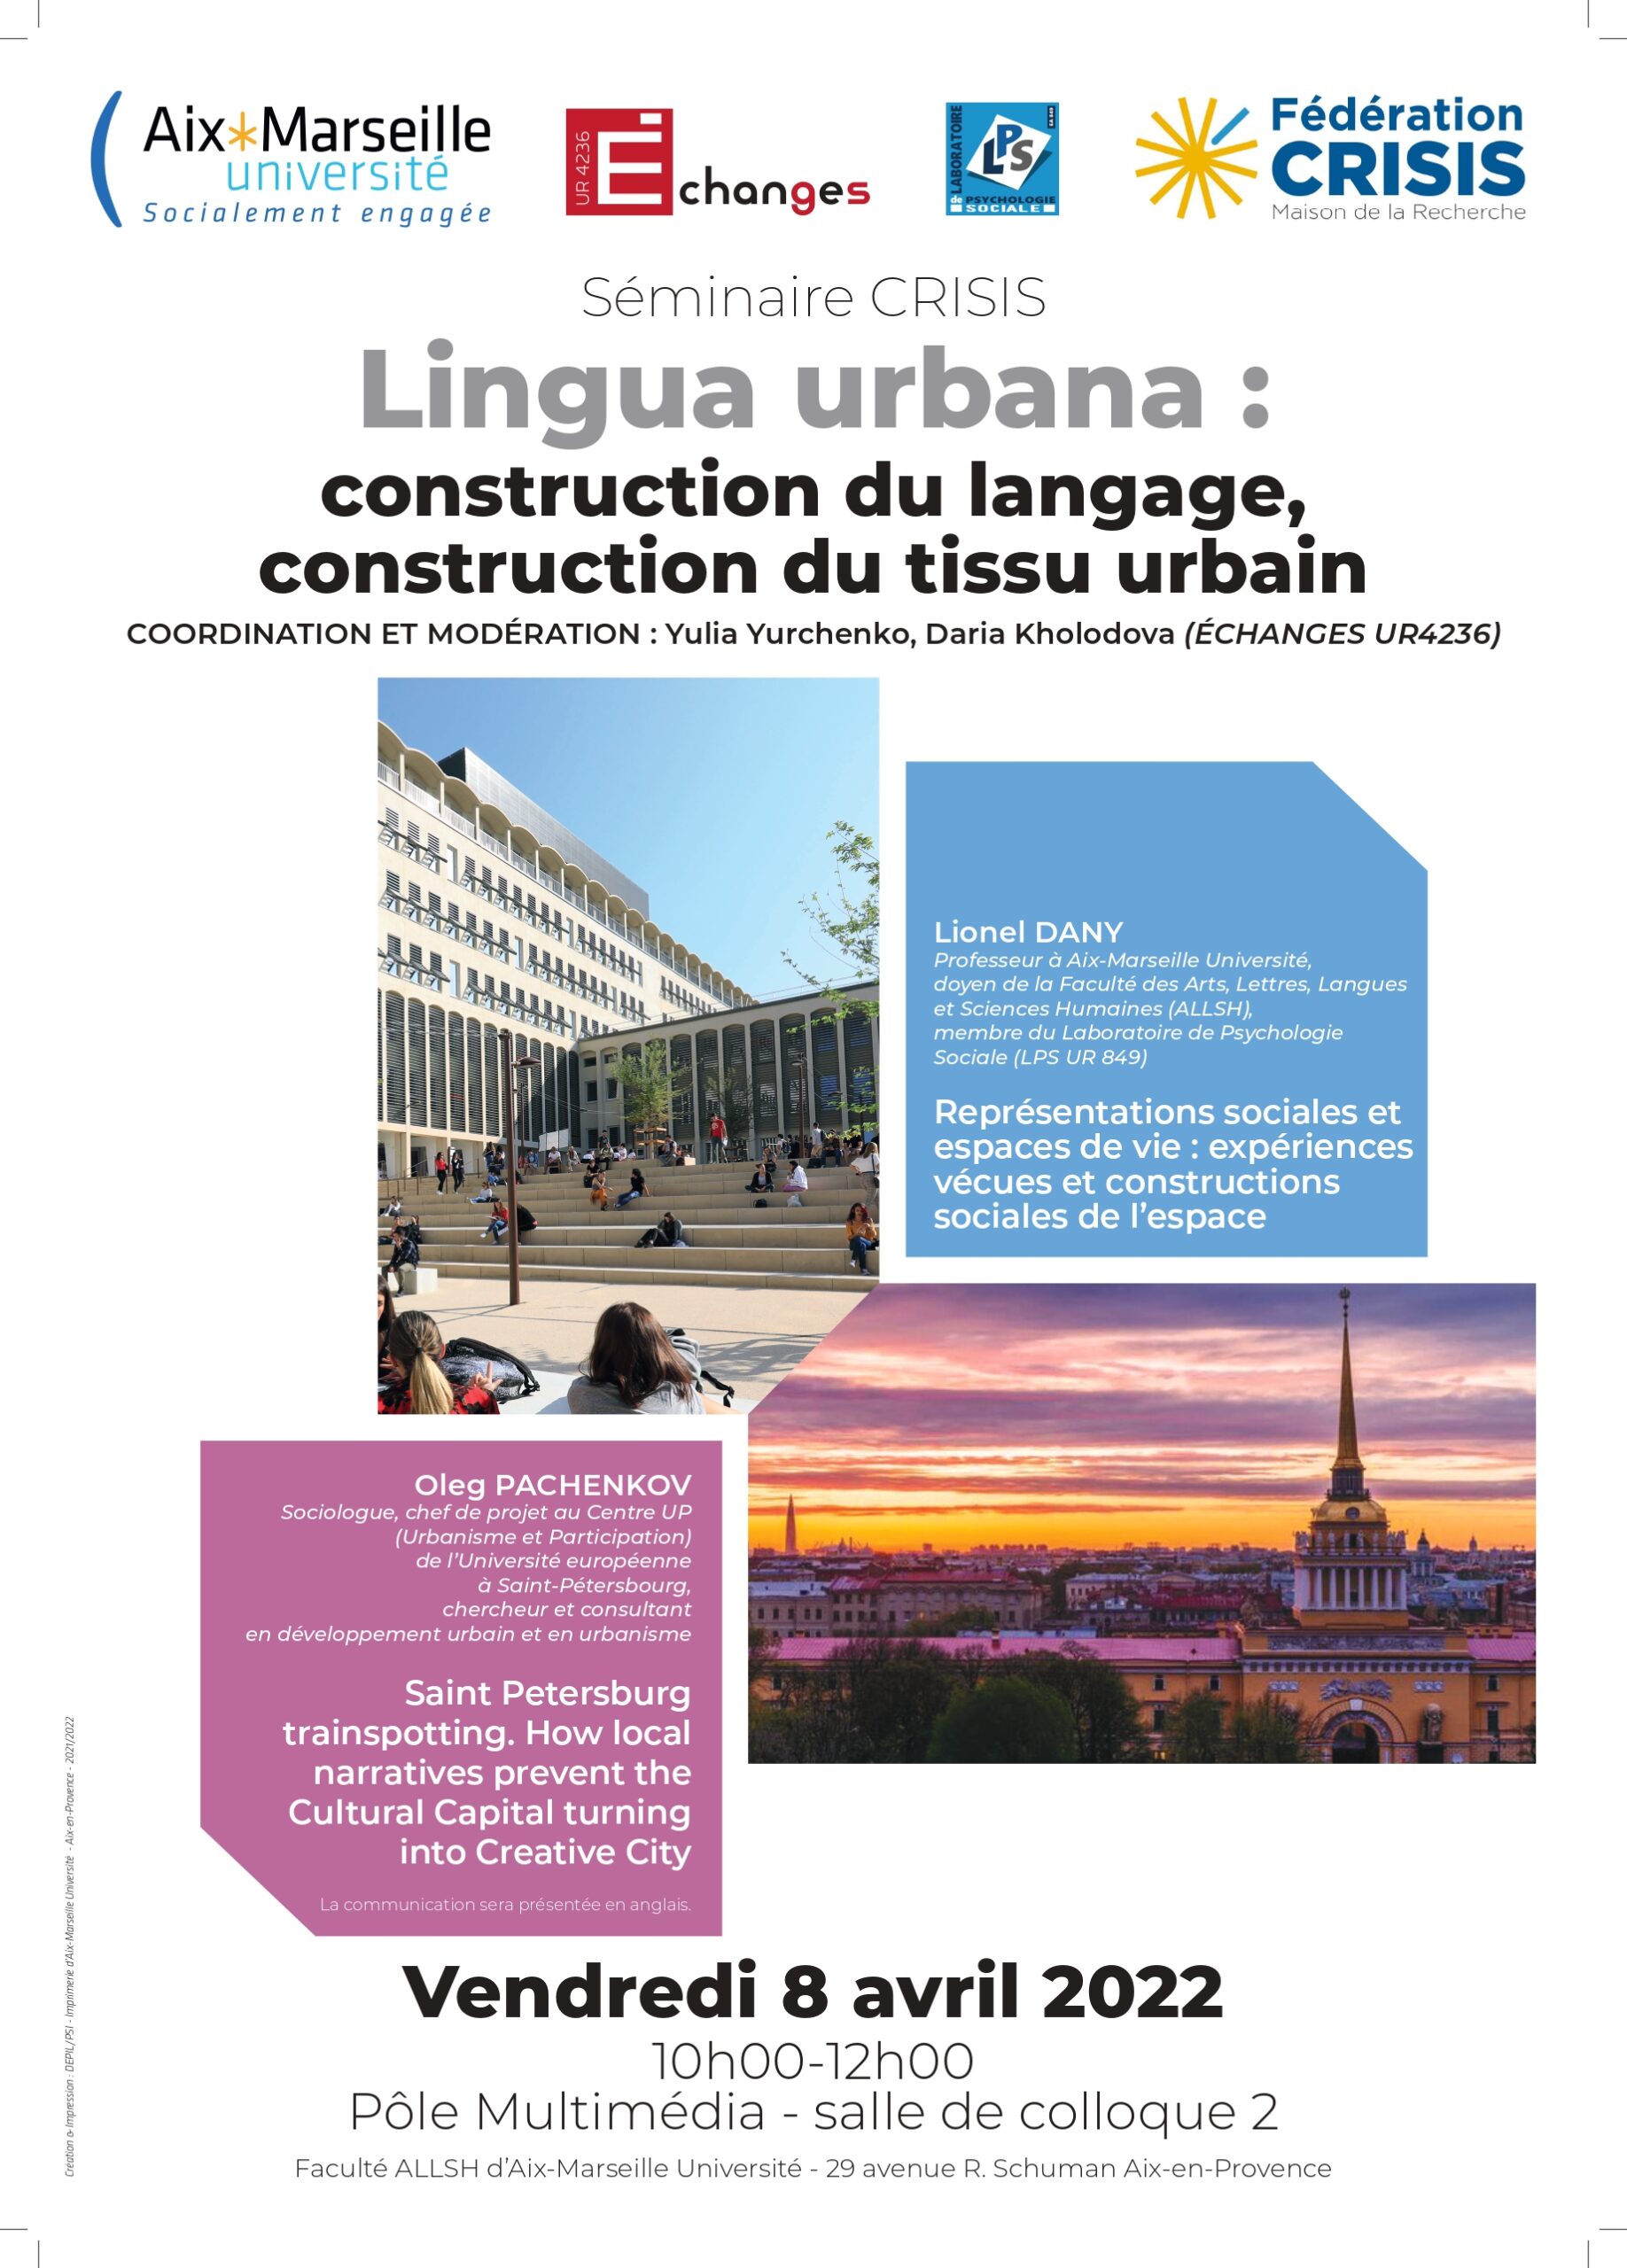 La 4e séance du séminaire CRISIS  » Lingua urbana : construction du langage, construction du tissus urbain « 